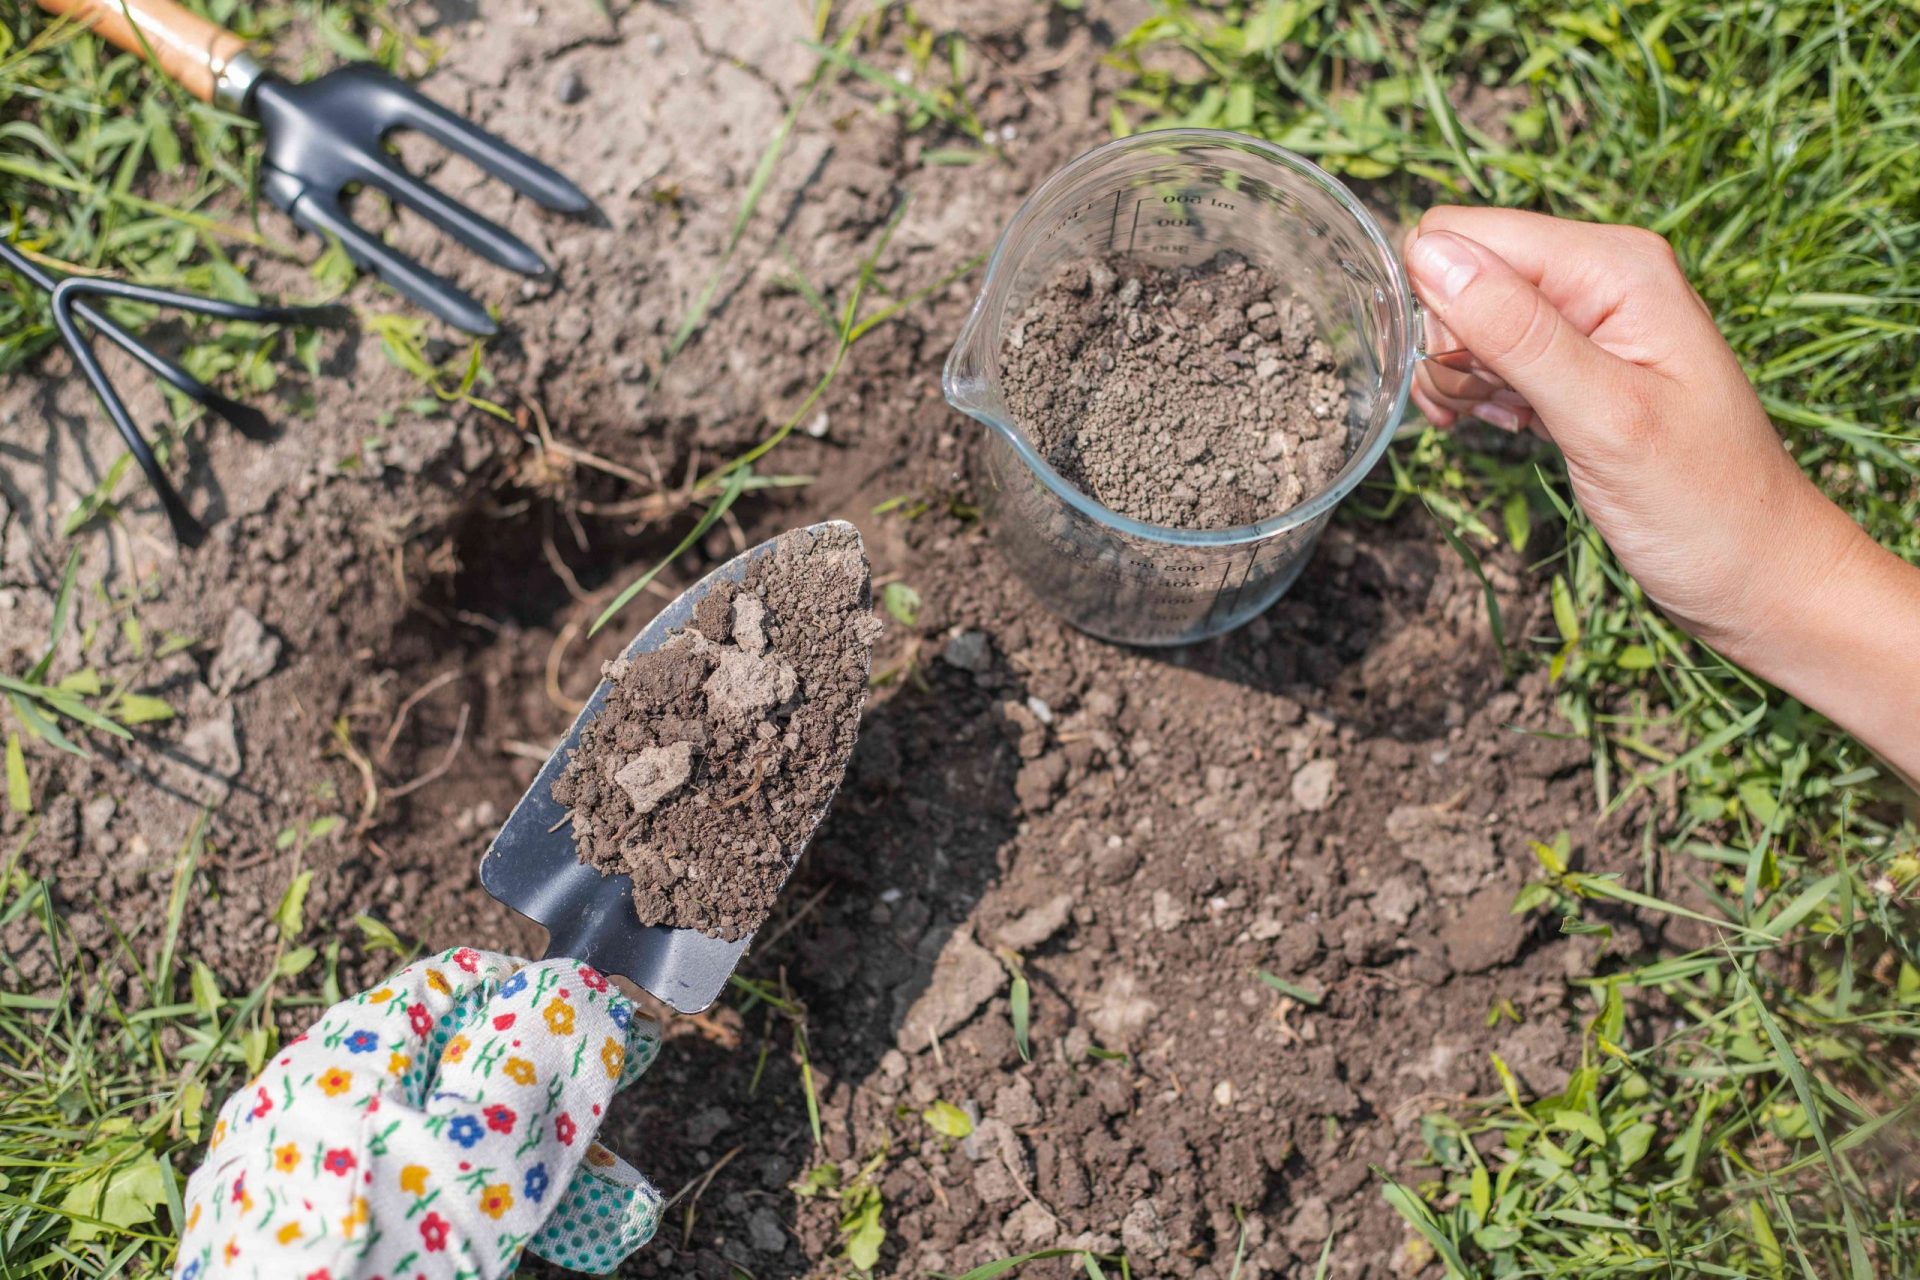 mano con herramientas de jardinería y vaso medidor recogiendo tierra para analizarla